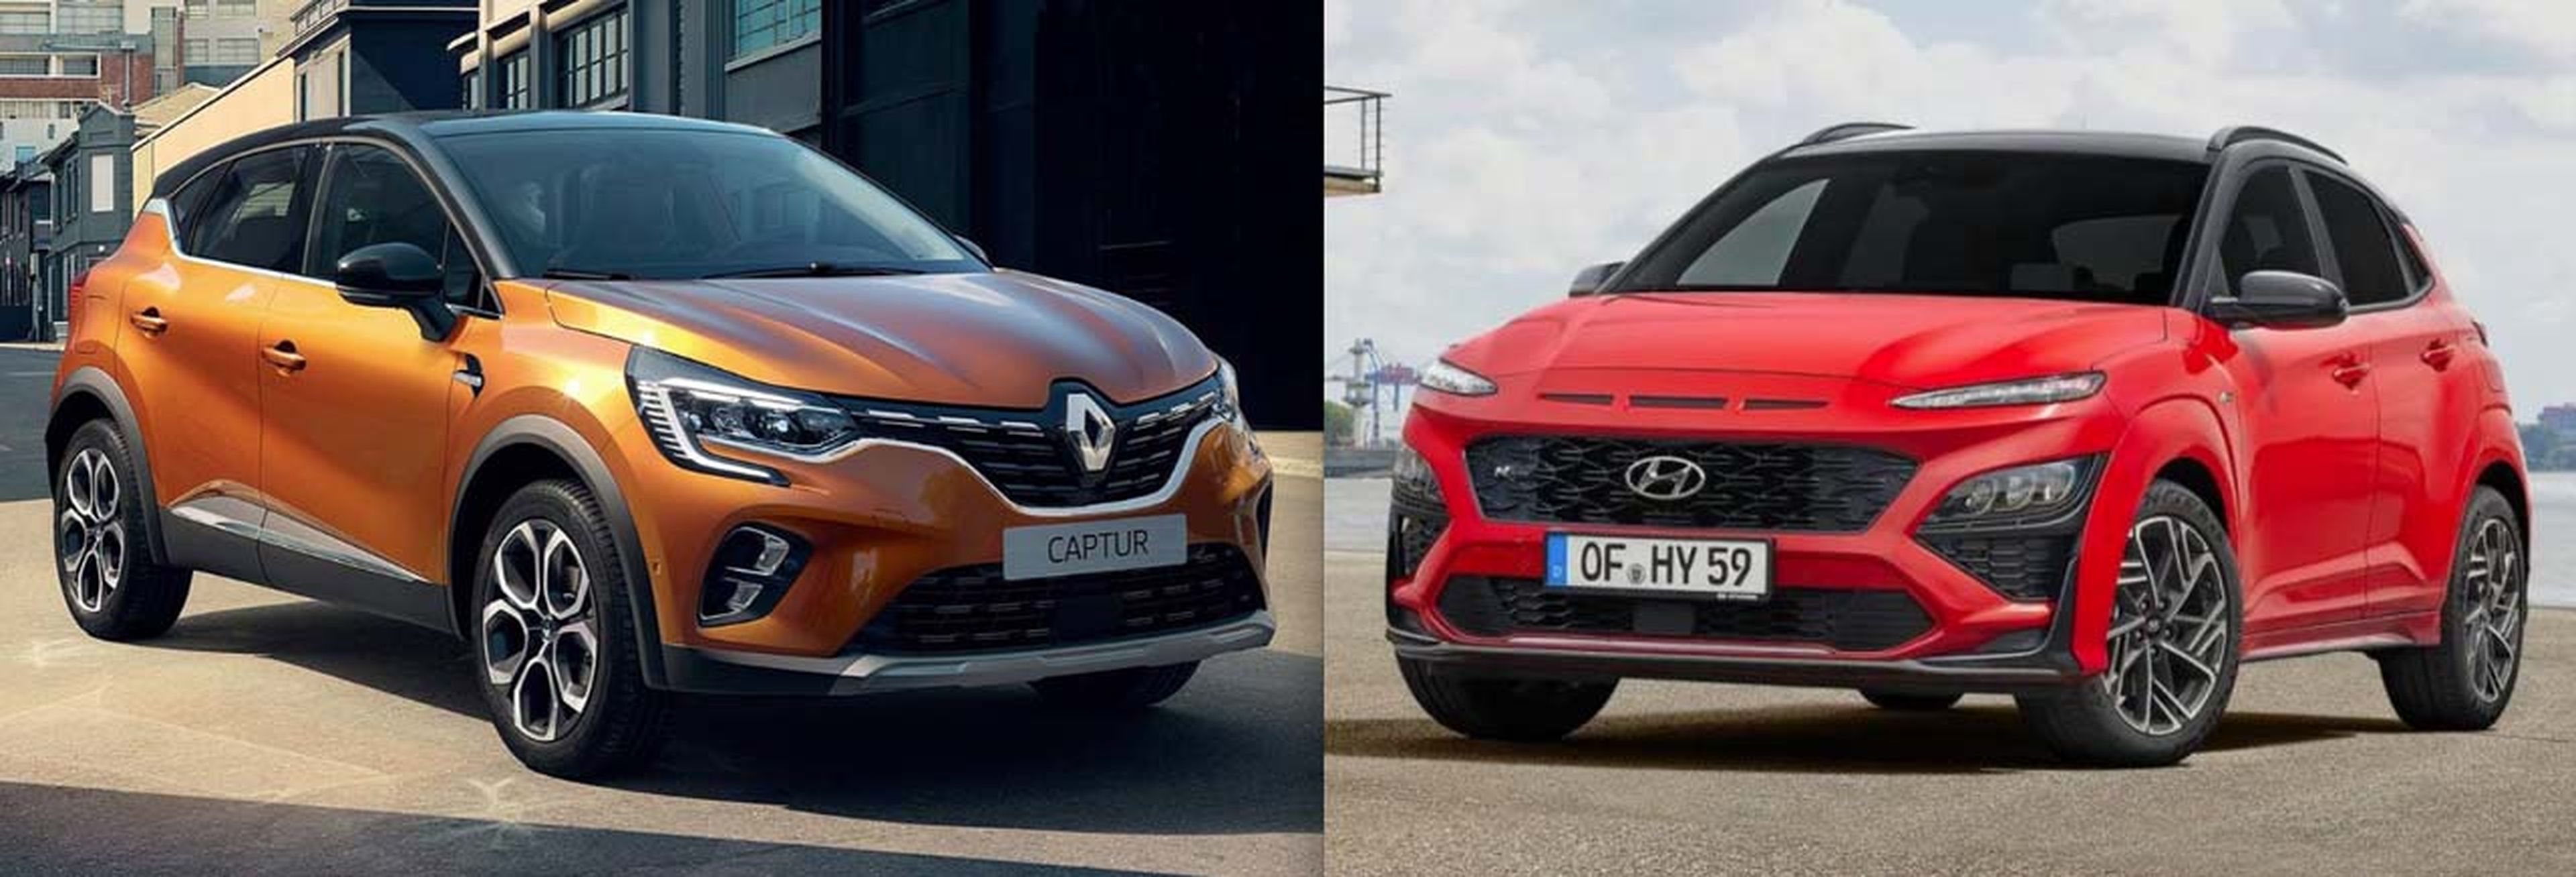 Hyundai Kona o Renault Captur, ¿cuál tiene mejor versión híbrida?